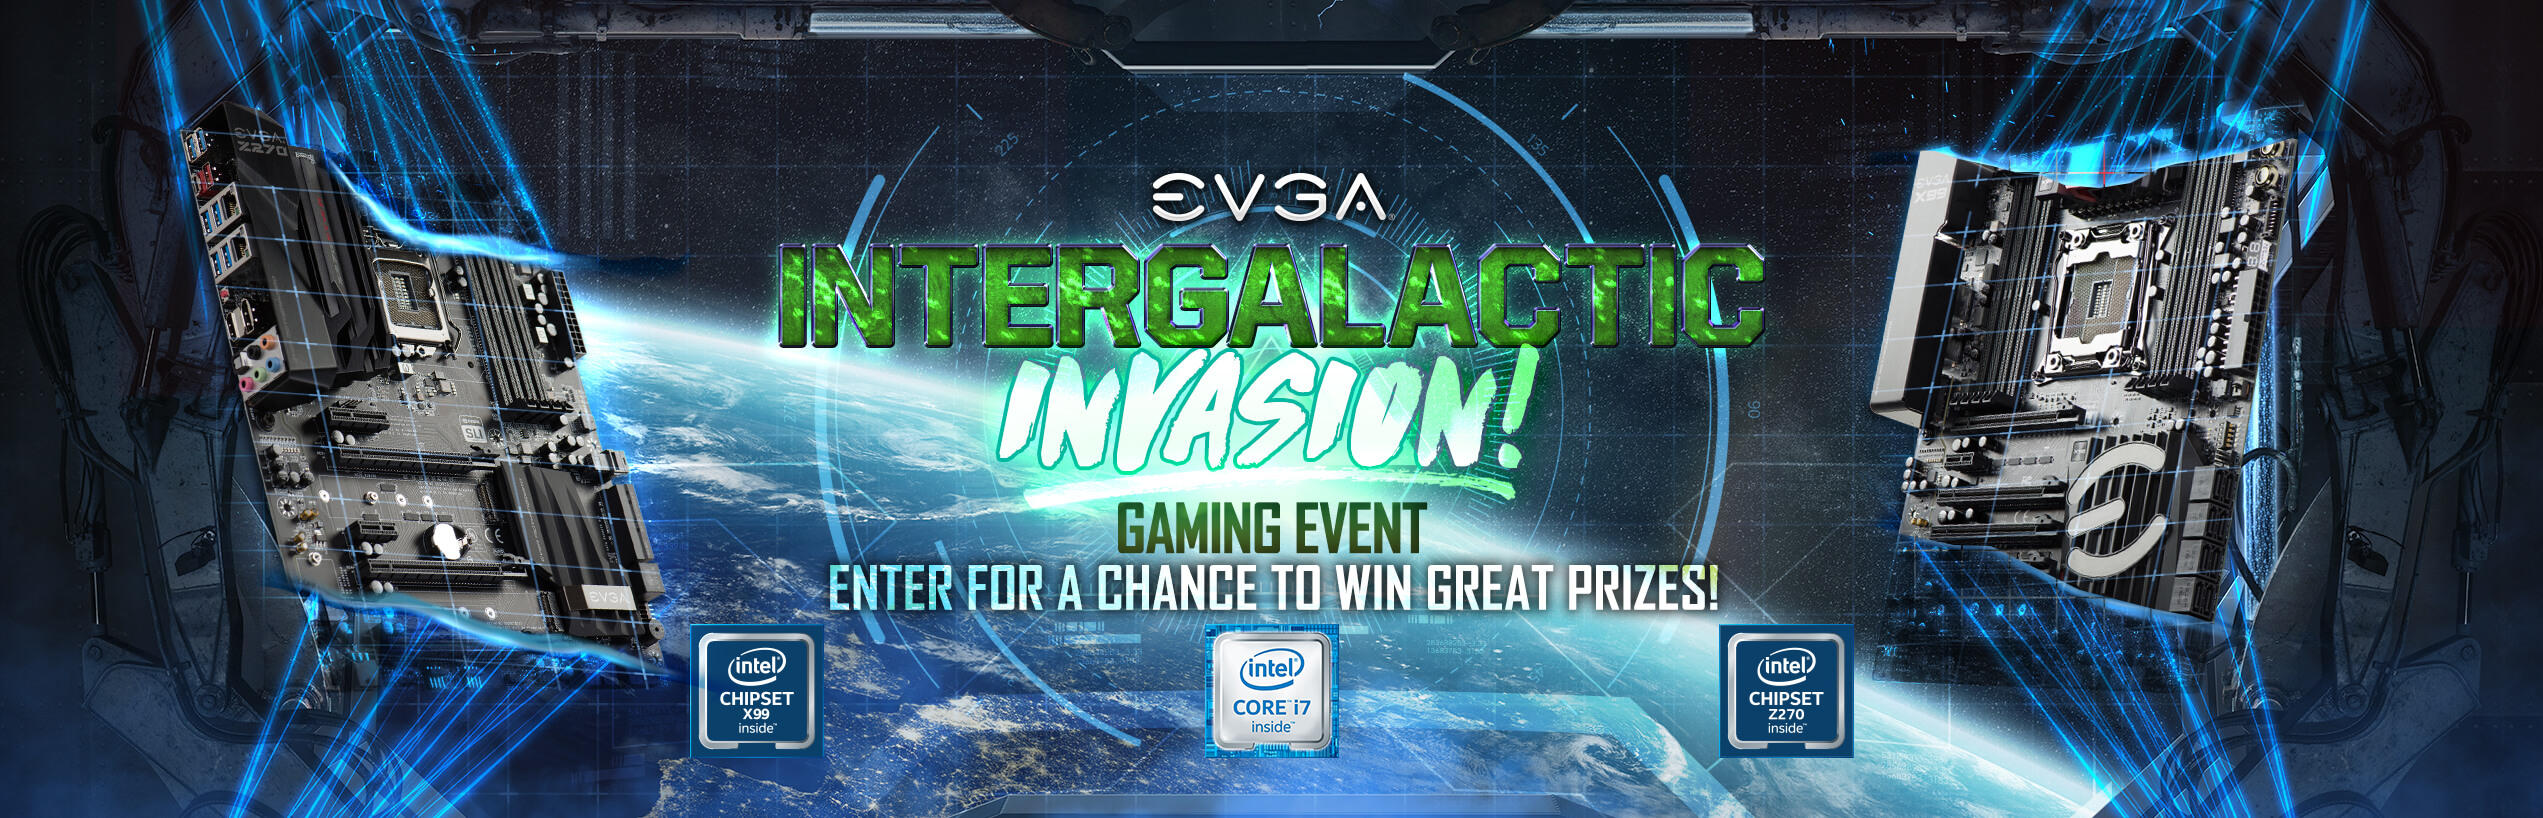 EVGA Intergalactic Invasion Gaming Event